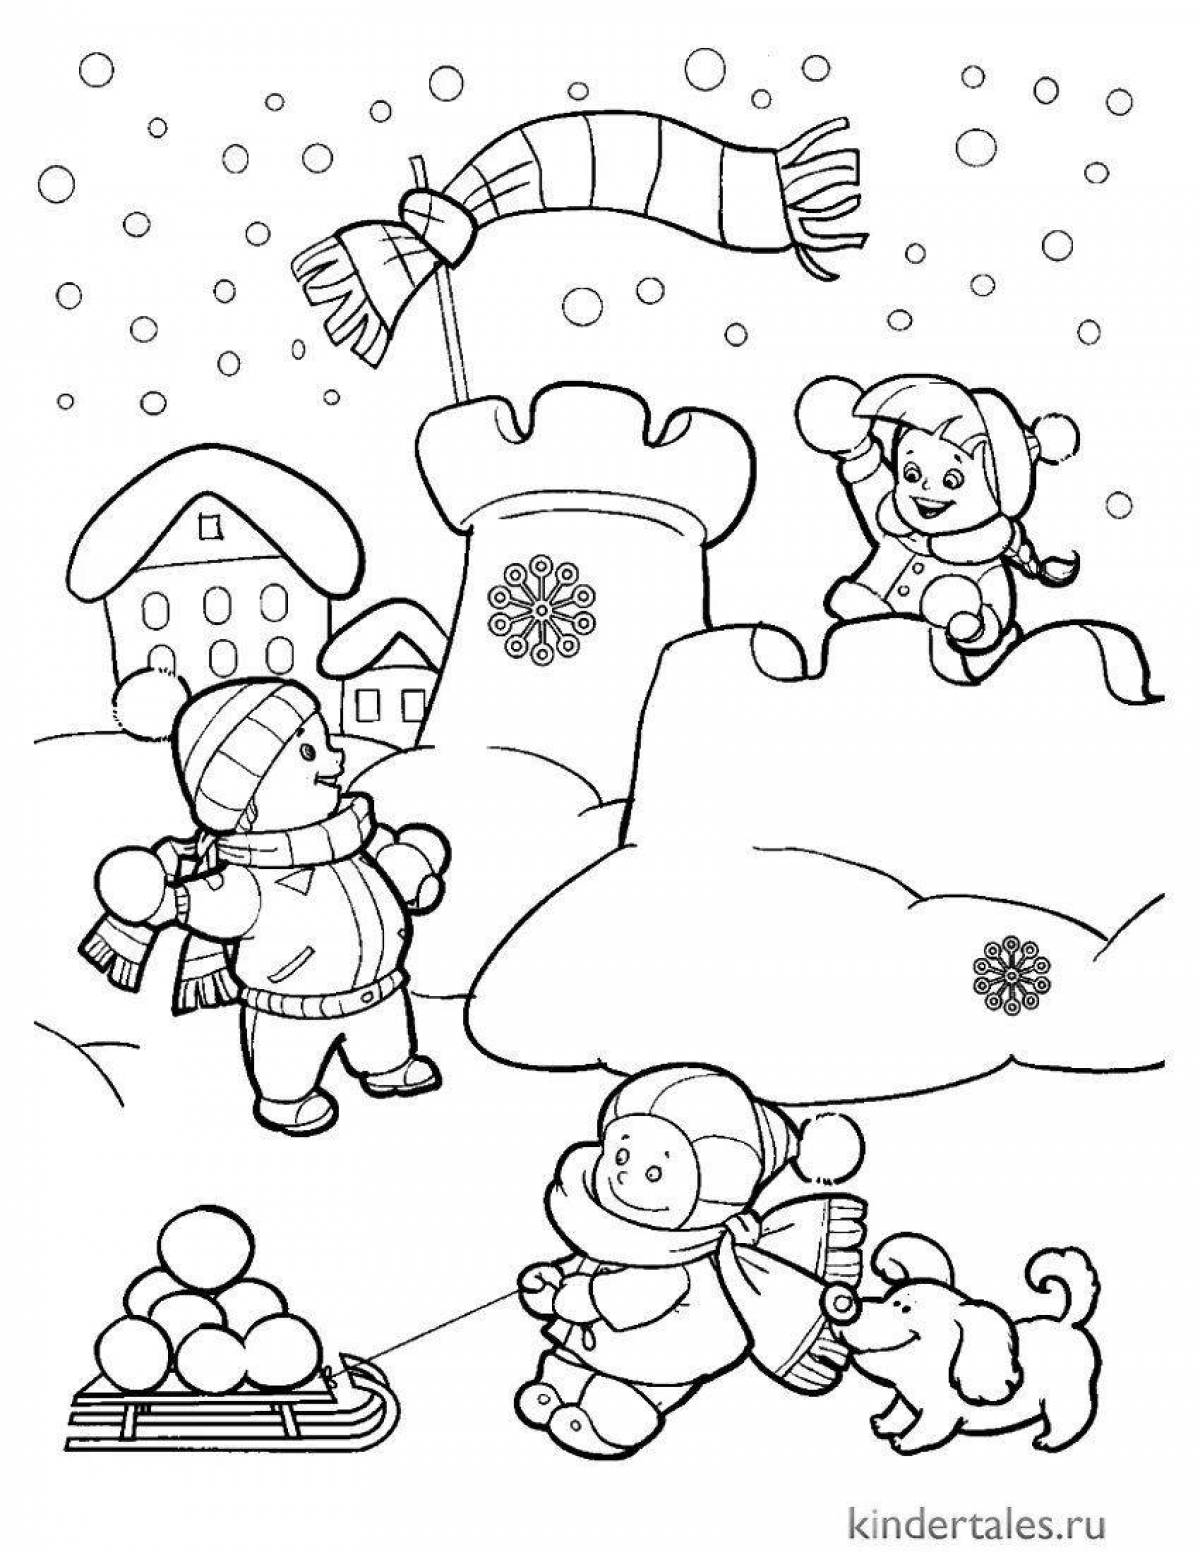 Fun coloring book for winter fun